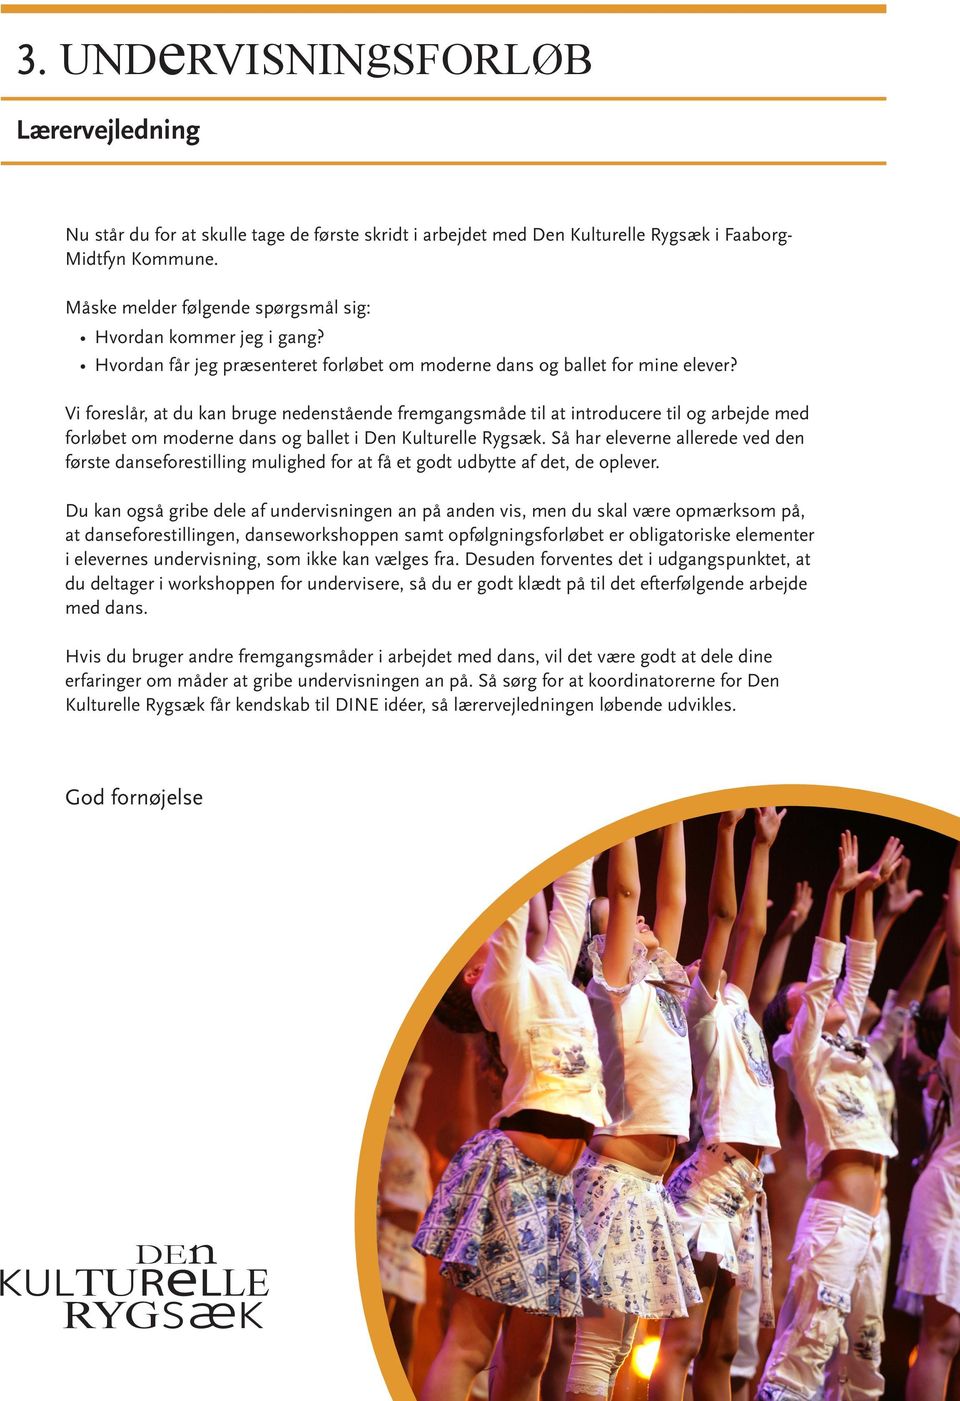 Vi foreslår, at du kan bruge nedenstående fremgangsmåde til at introducere til og arbejde med forløbet om moderne dans og ballet i Den Kulturelle Rygsæk.